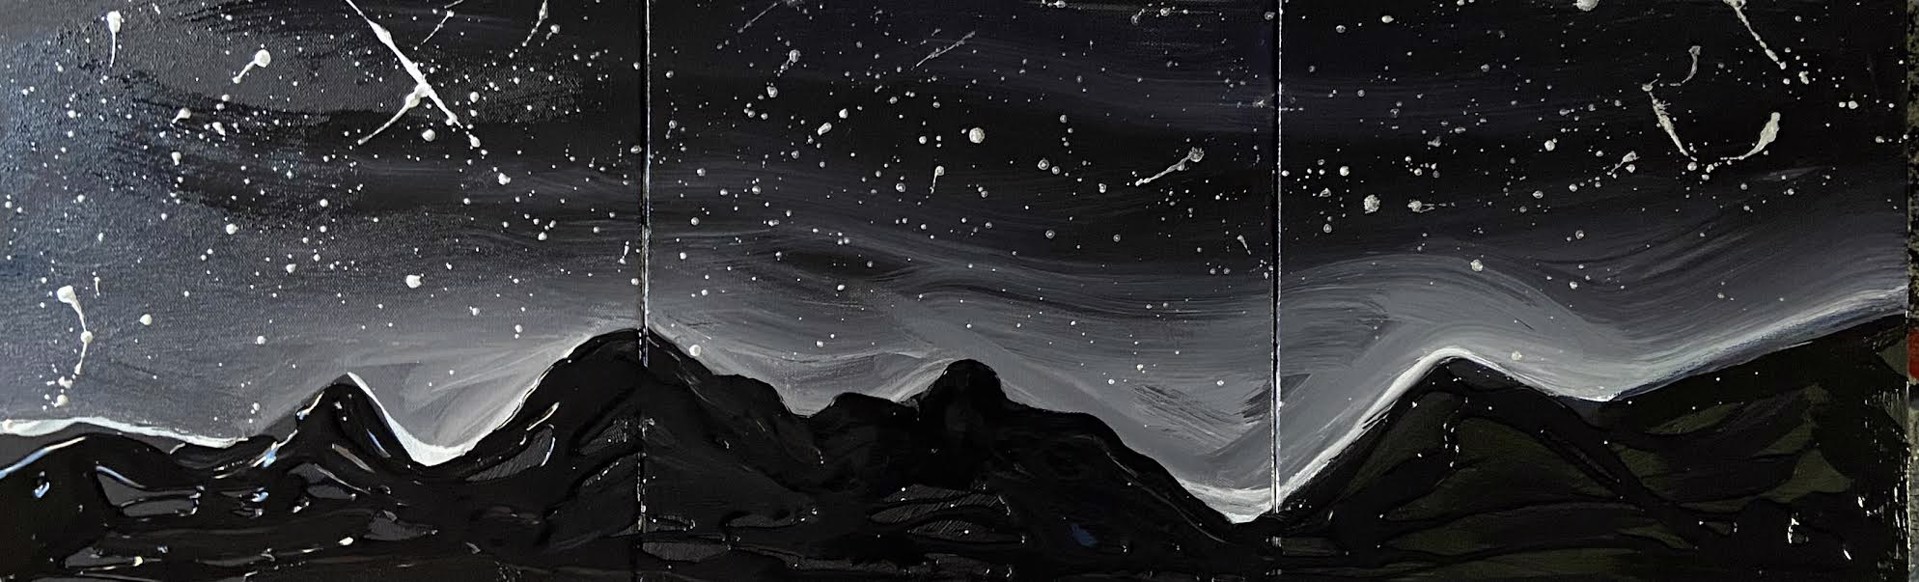 Dark Sky Sanctuary- Triptych by Jessamine Narita